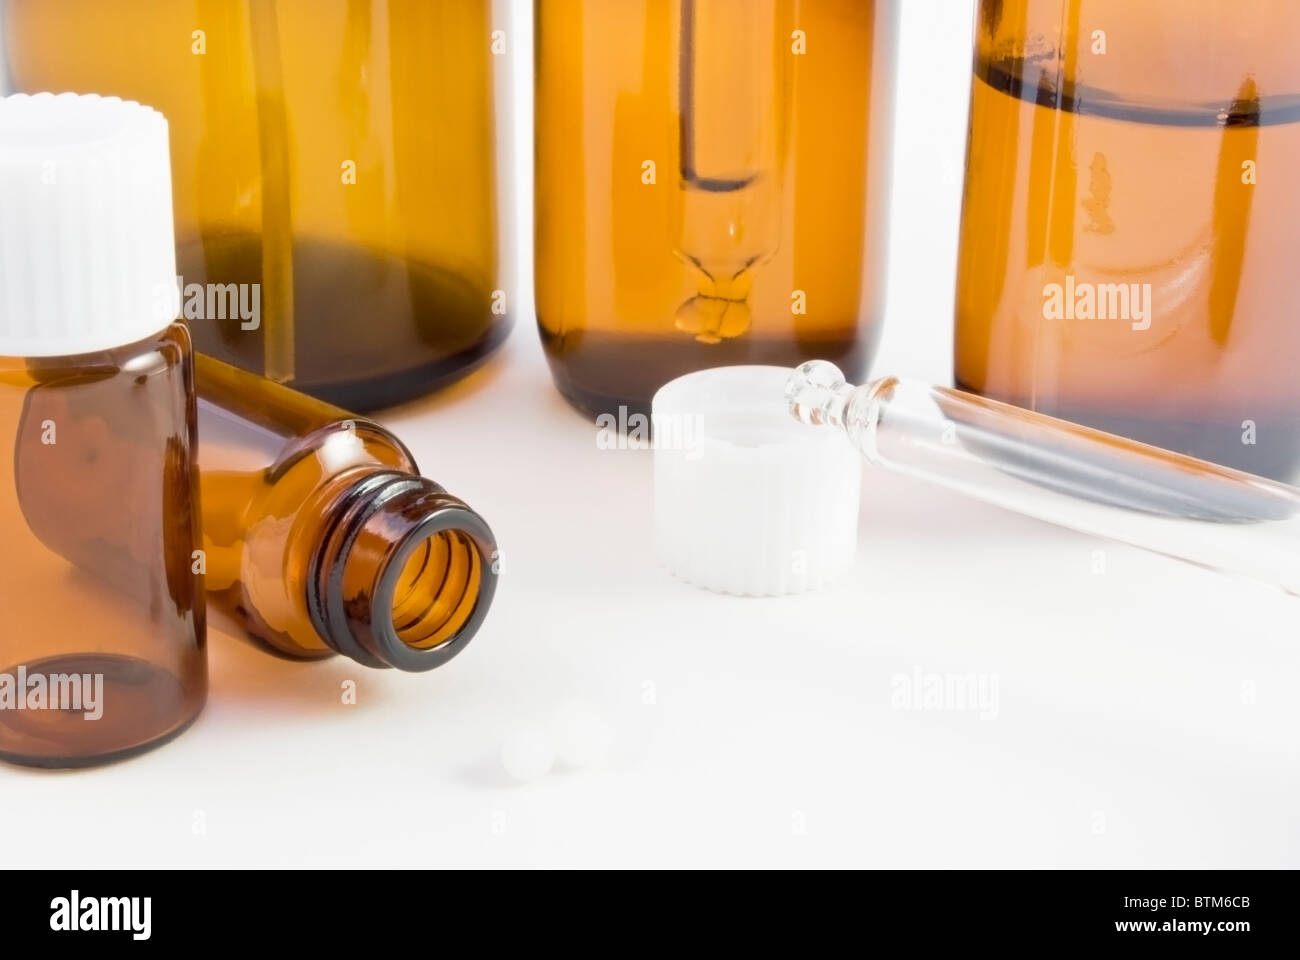 Una colección de botellas de vidrio ámbar remedy (spray, gotero y píldora) y pillules utilizadas en farmacia homeopática. Foto de stock